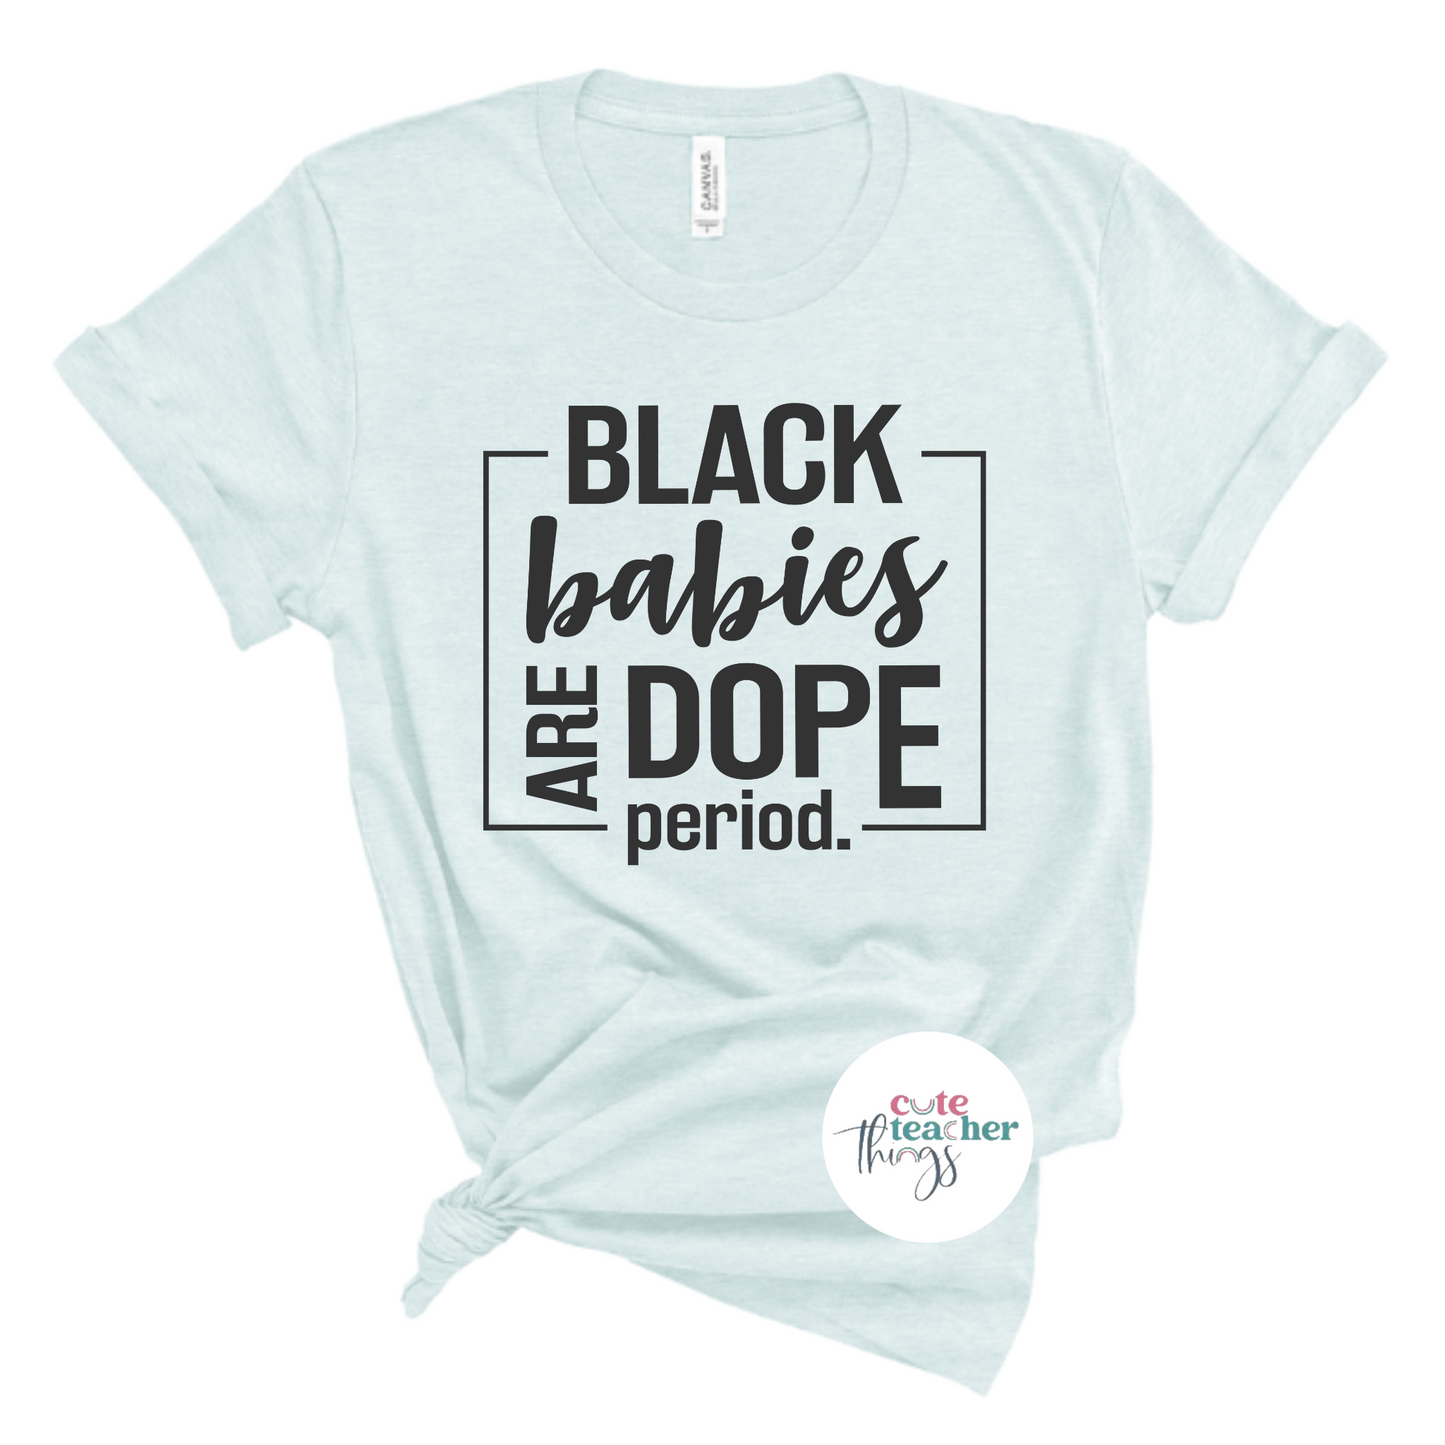 juneteenth celebration shirt, perfect gift idea, black women shirt